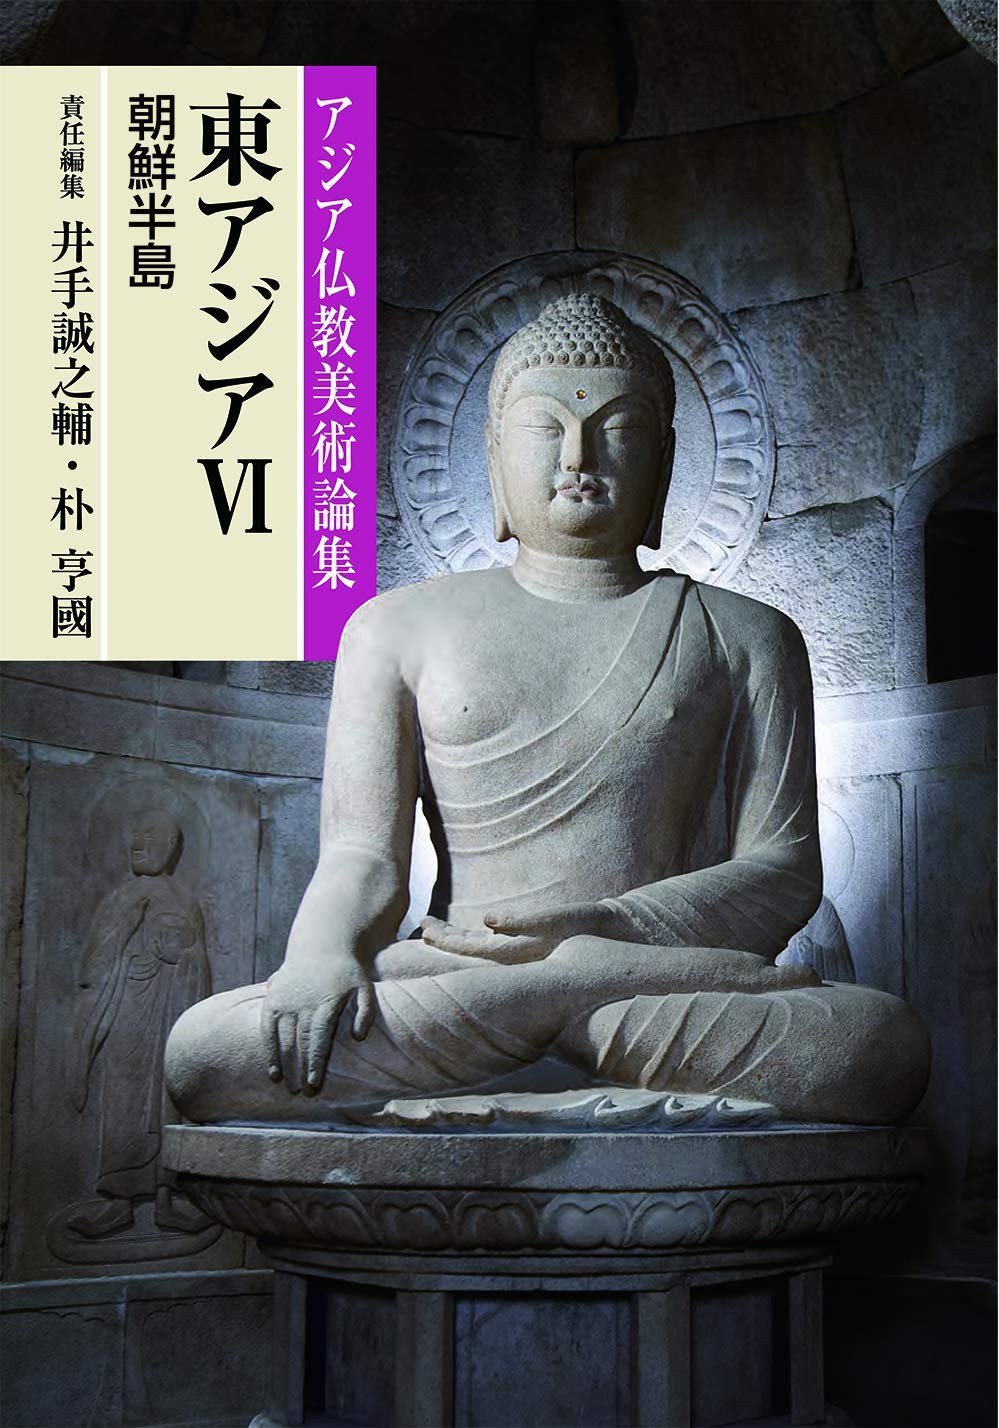 アジア仏教美術論集 東アジア 6 朝鮮半島